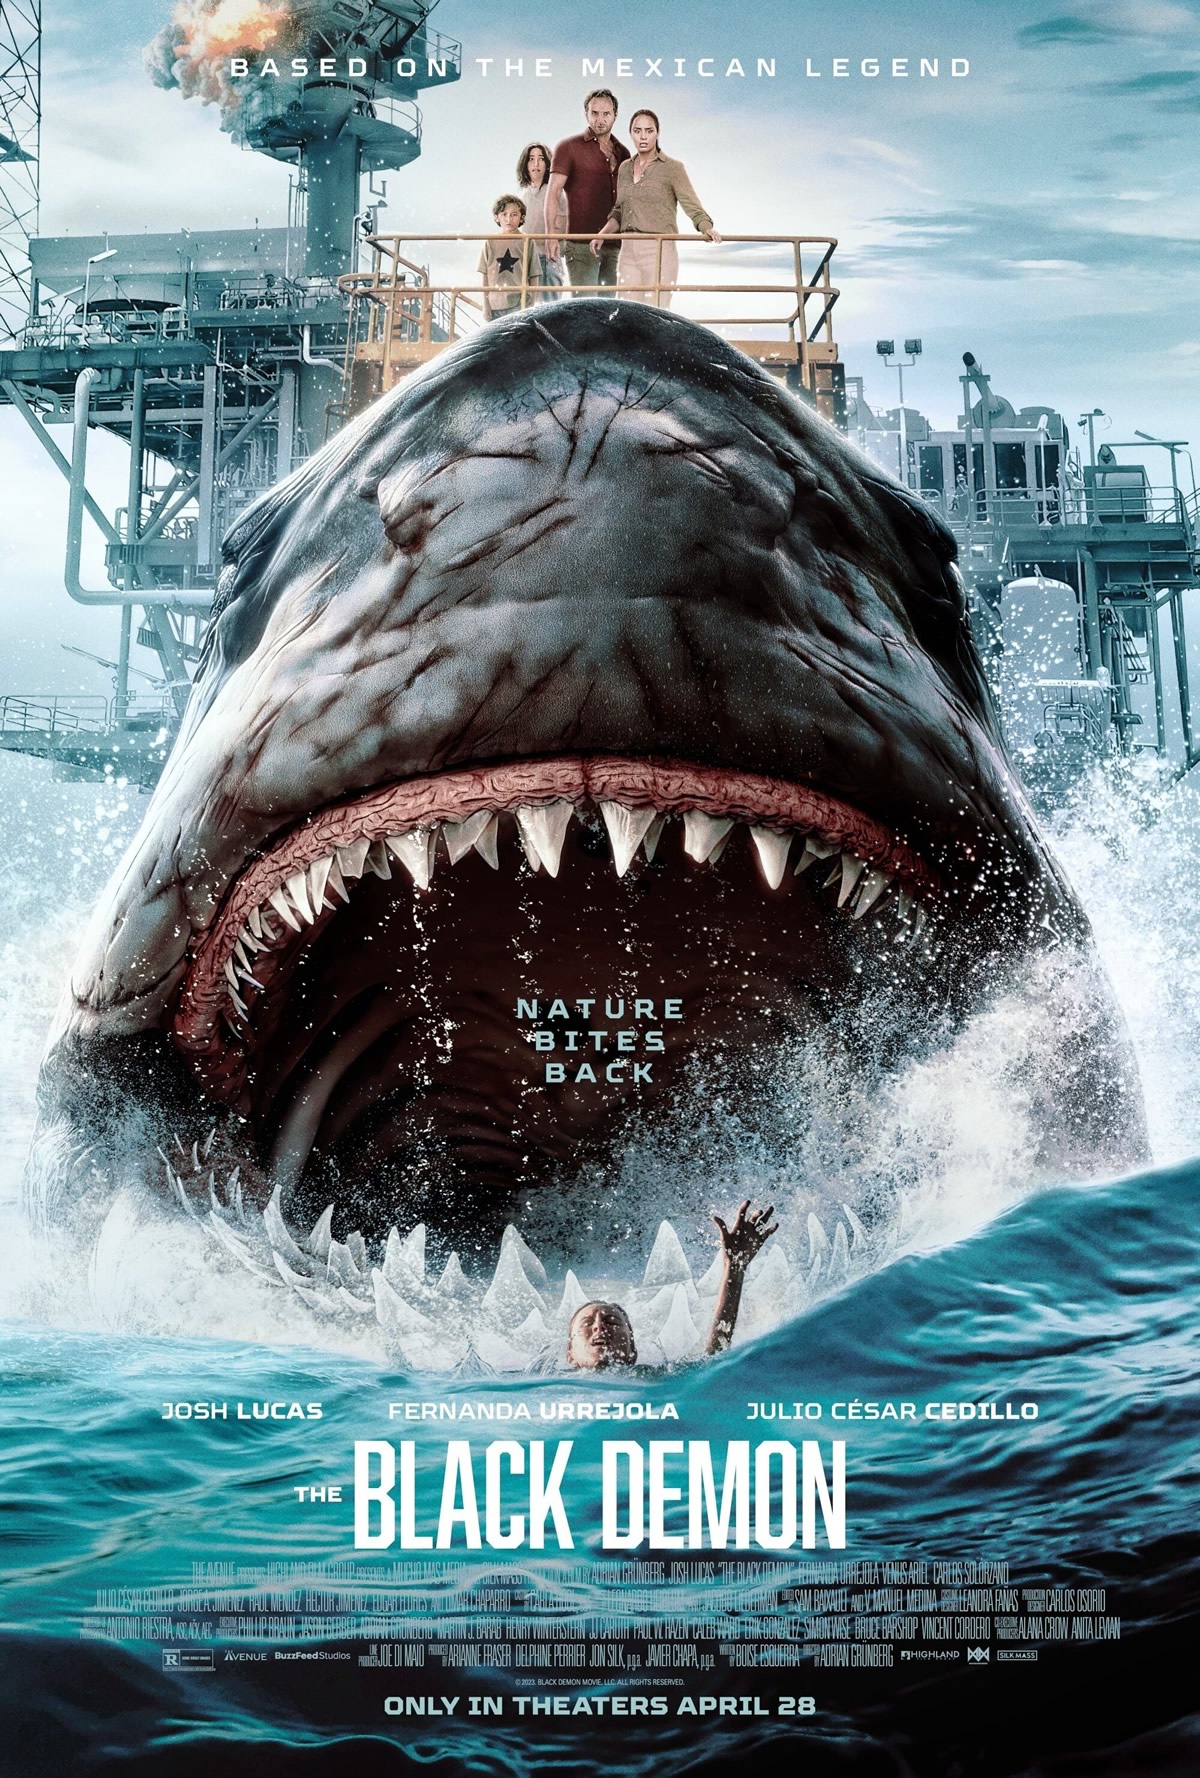 THE BLACK DEMON | Tubarão megalodonte feroz em filme de terror com Josh Lucas e Fernanda Urrejola